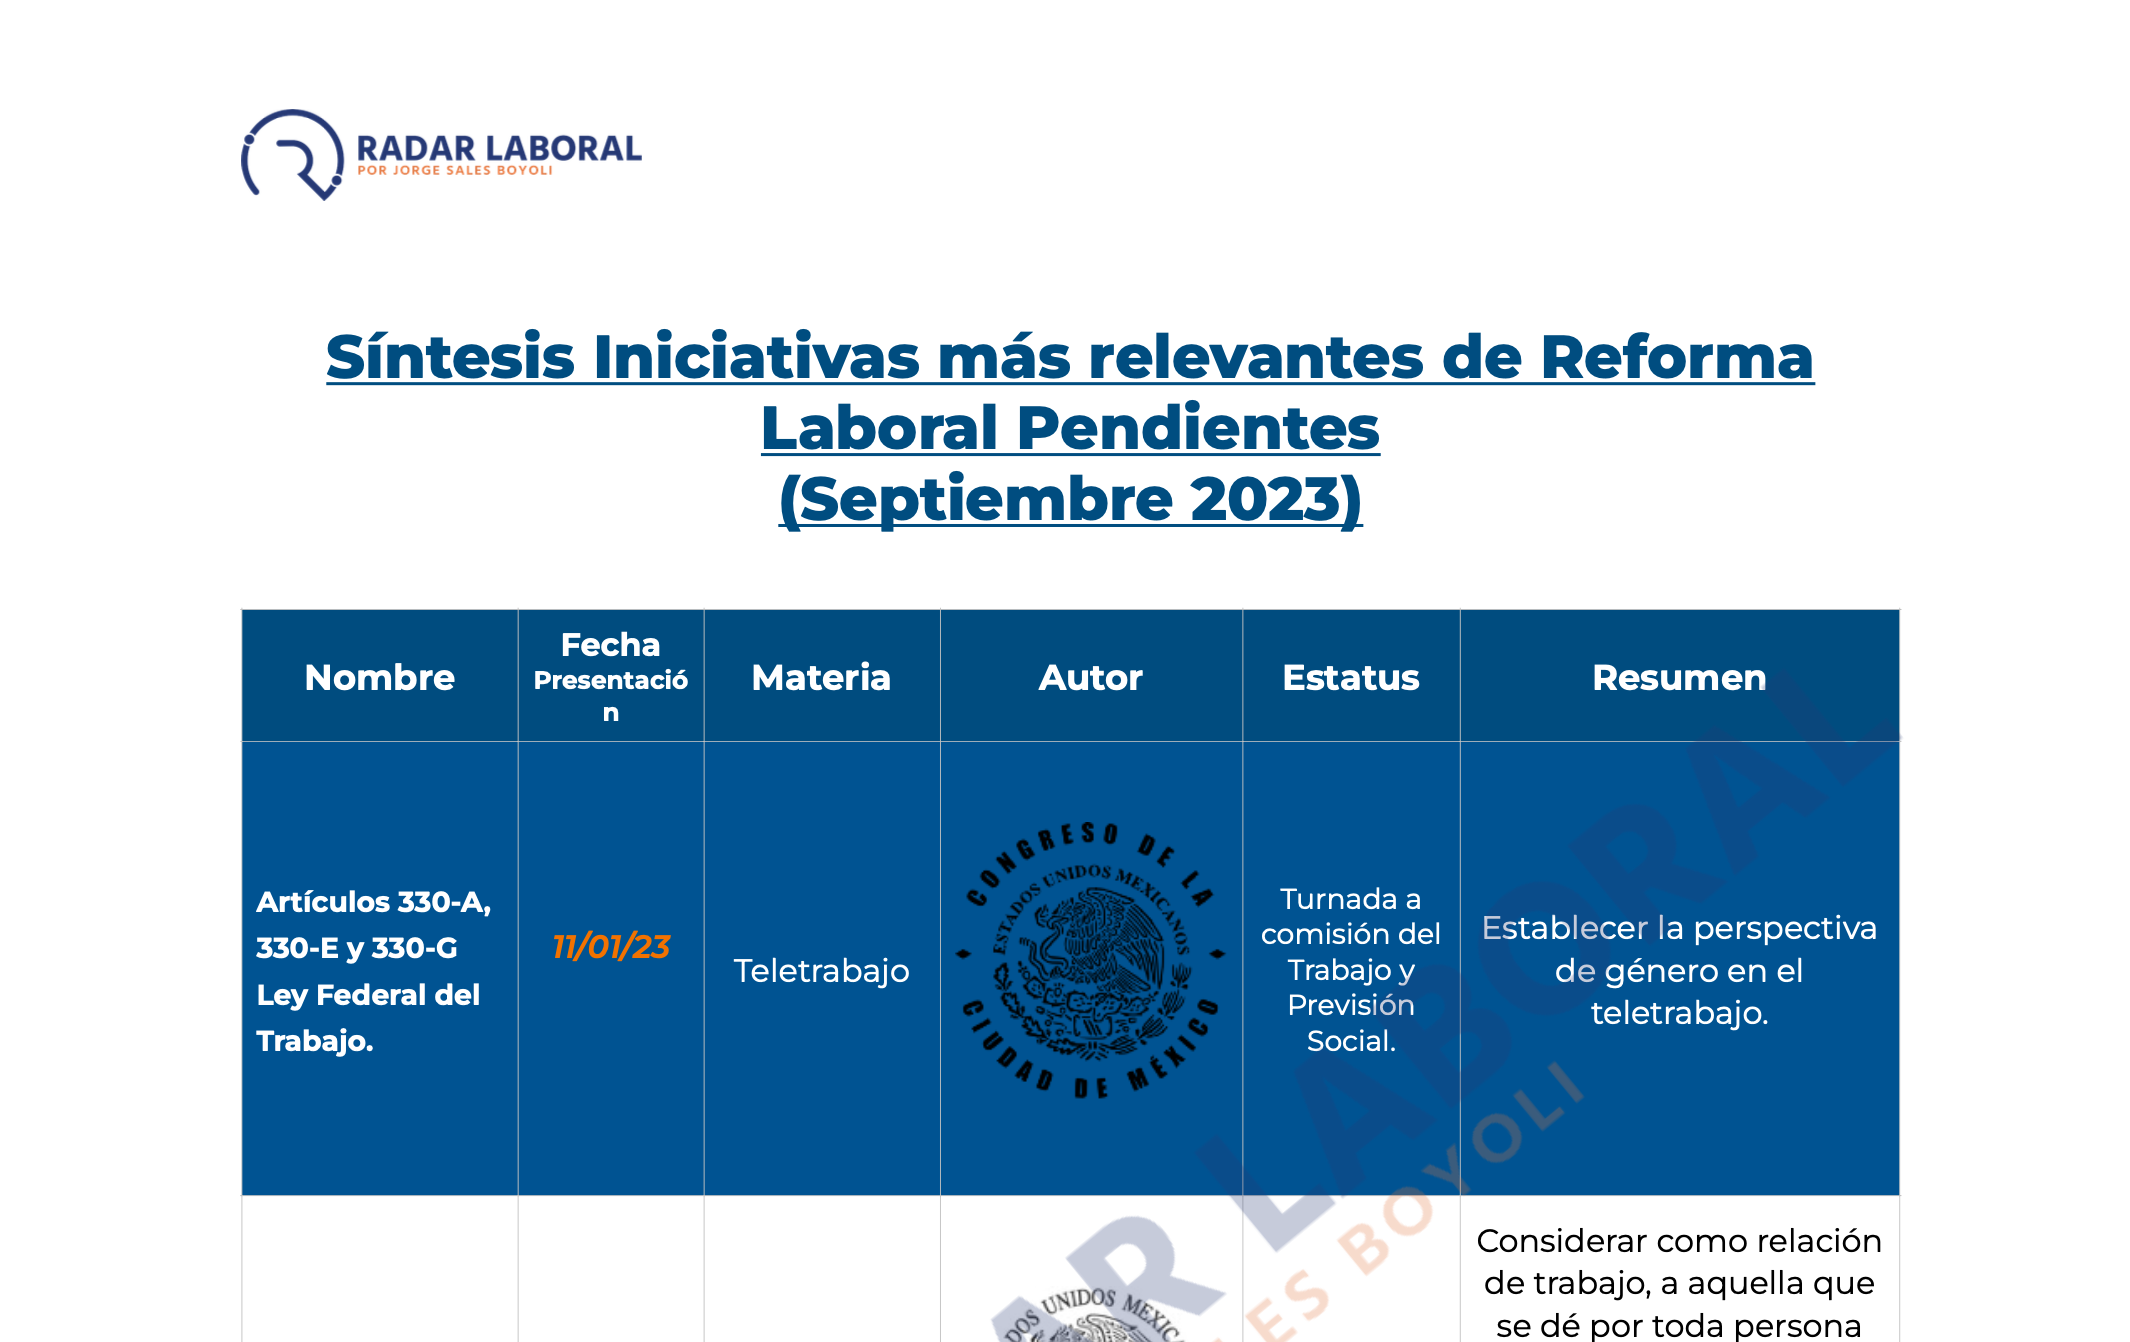 Conoce la actualización de RadarLaboral sobre las Iniciativas de Reforma